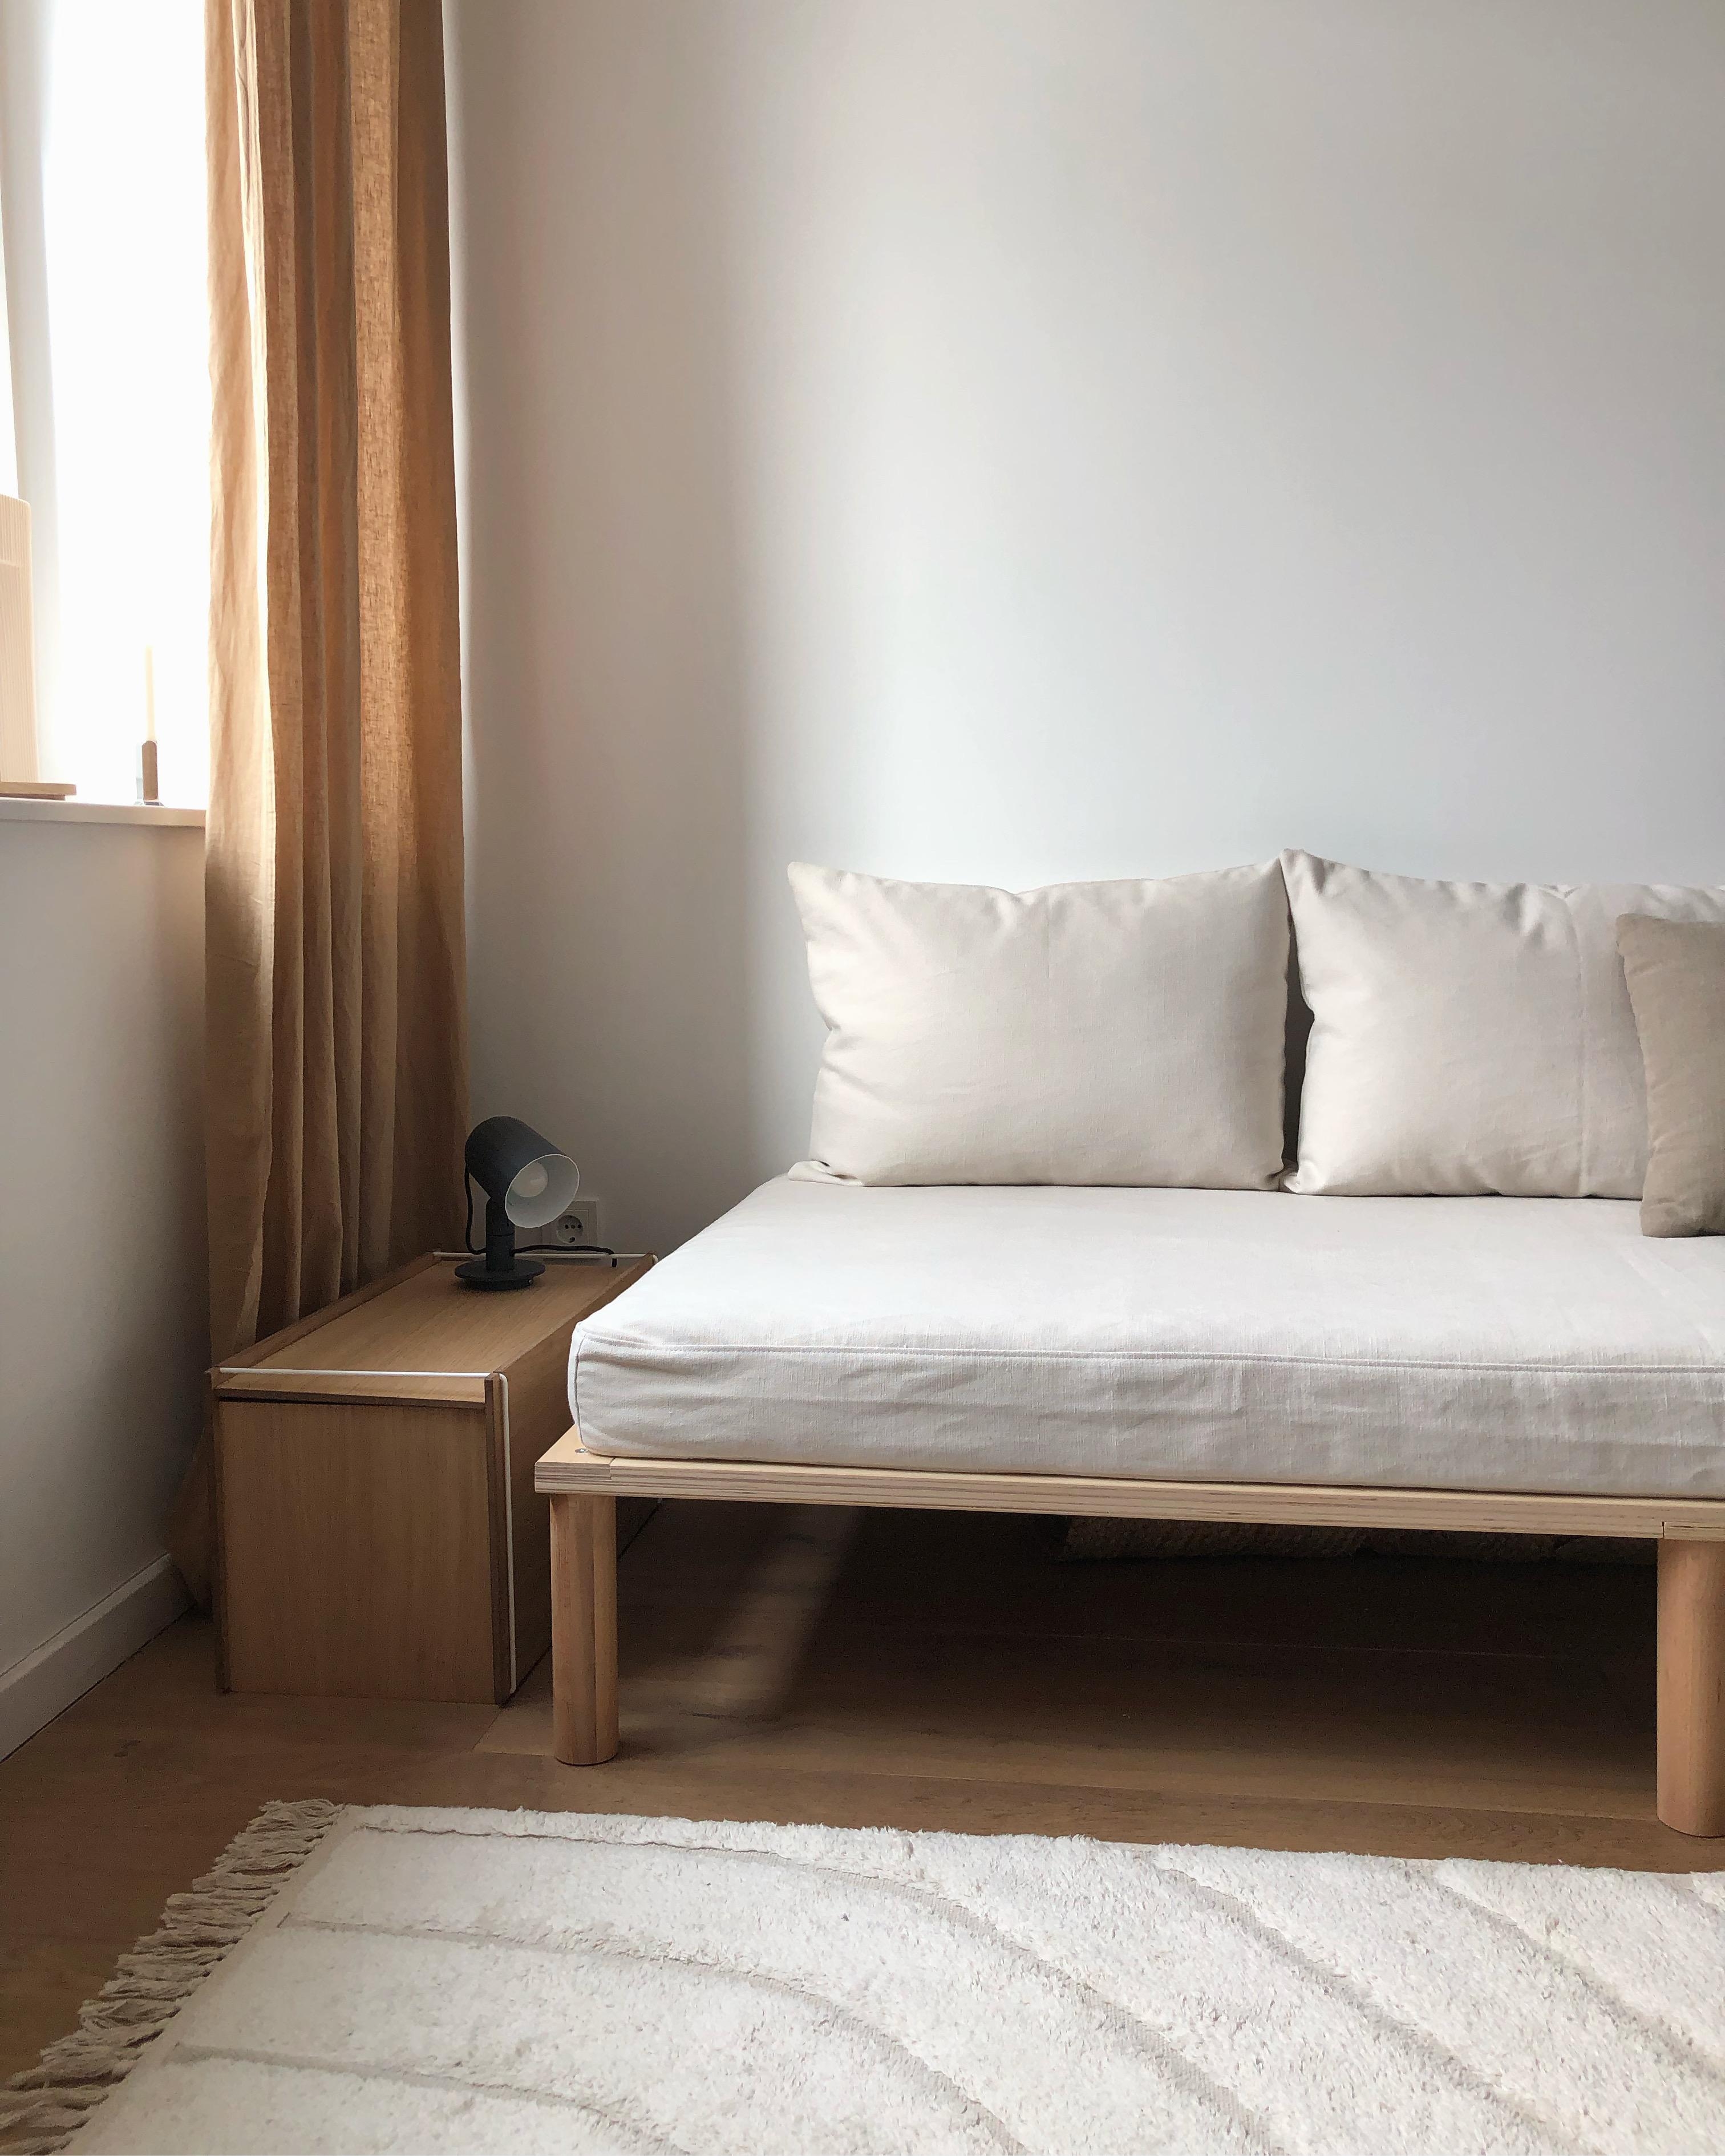 #gästezimmer #guestroom #daybed #bett #couch #japandi #skandinavisch #scandi #couchstyle #minimalism #interior